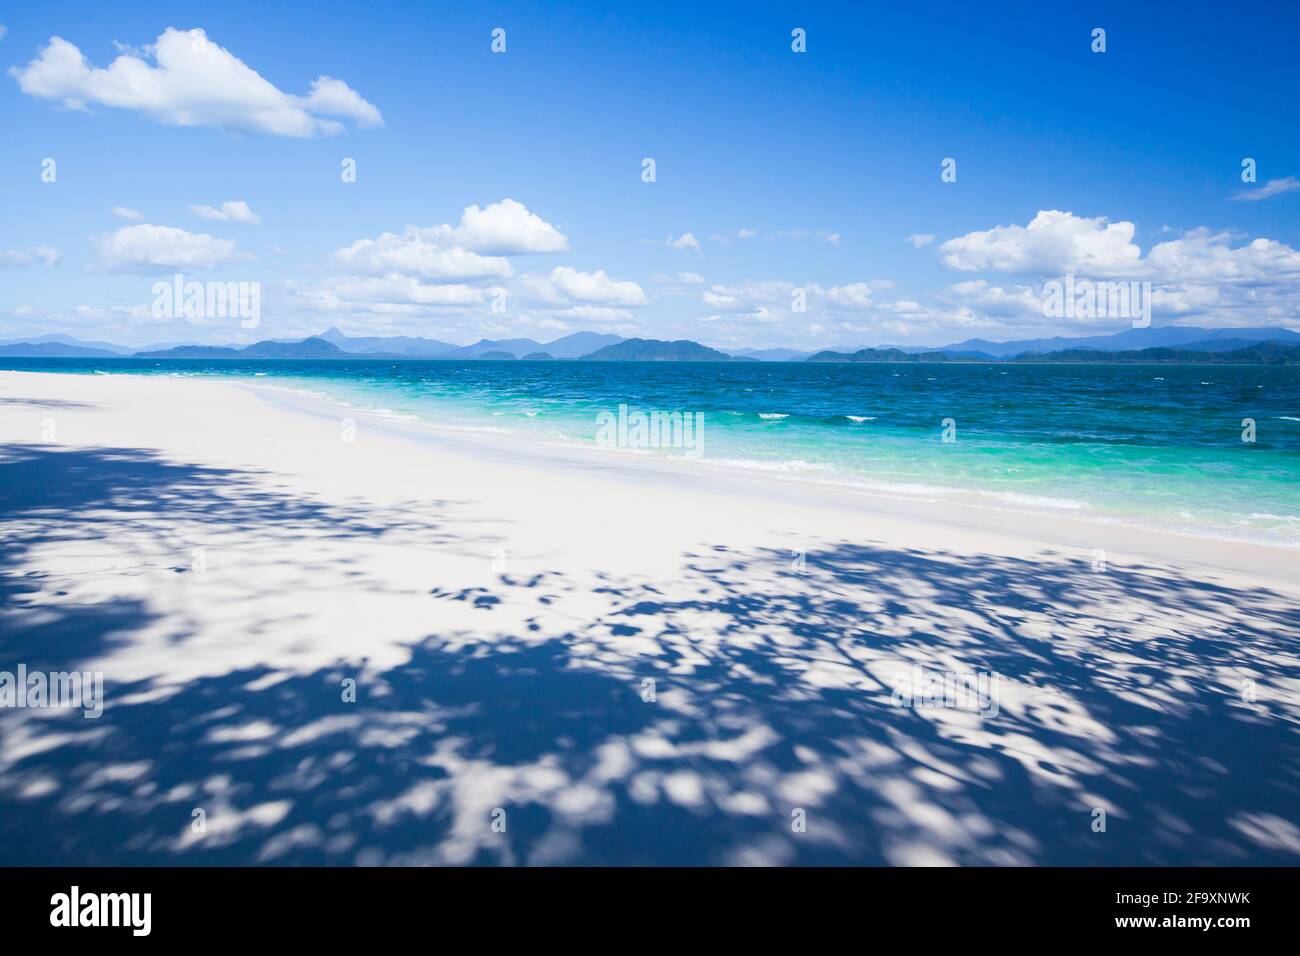 Reine tropische Insel im sonnigen Sommer, strahlend weißer Sandstrand und Wolken gegen blauen Himmel, fantastischer Schatten von Bäumen am Sandstrand. Thailand. Stockfoto